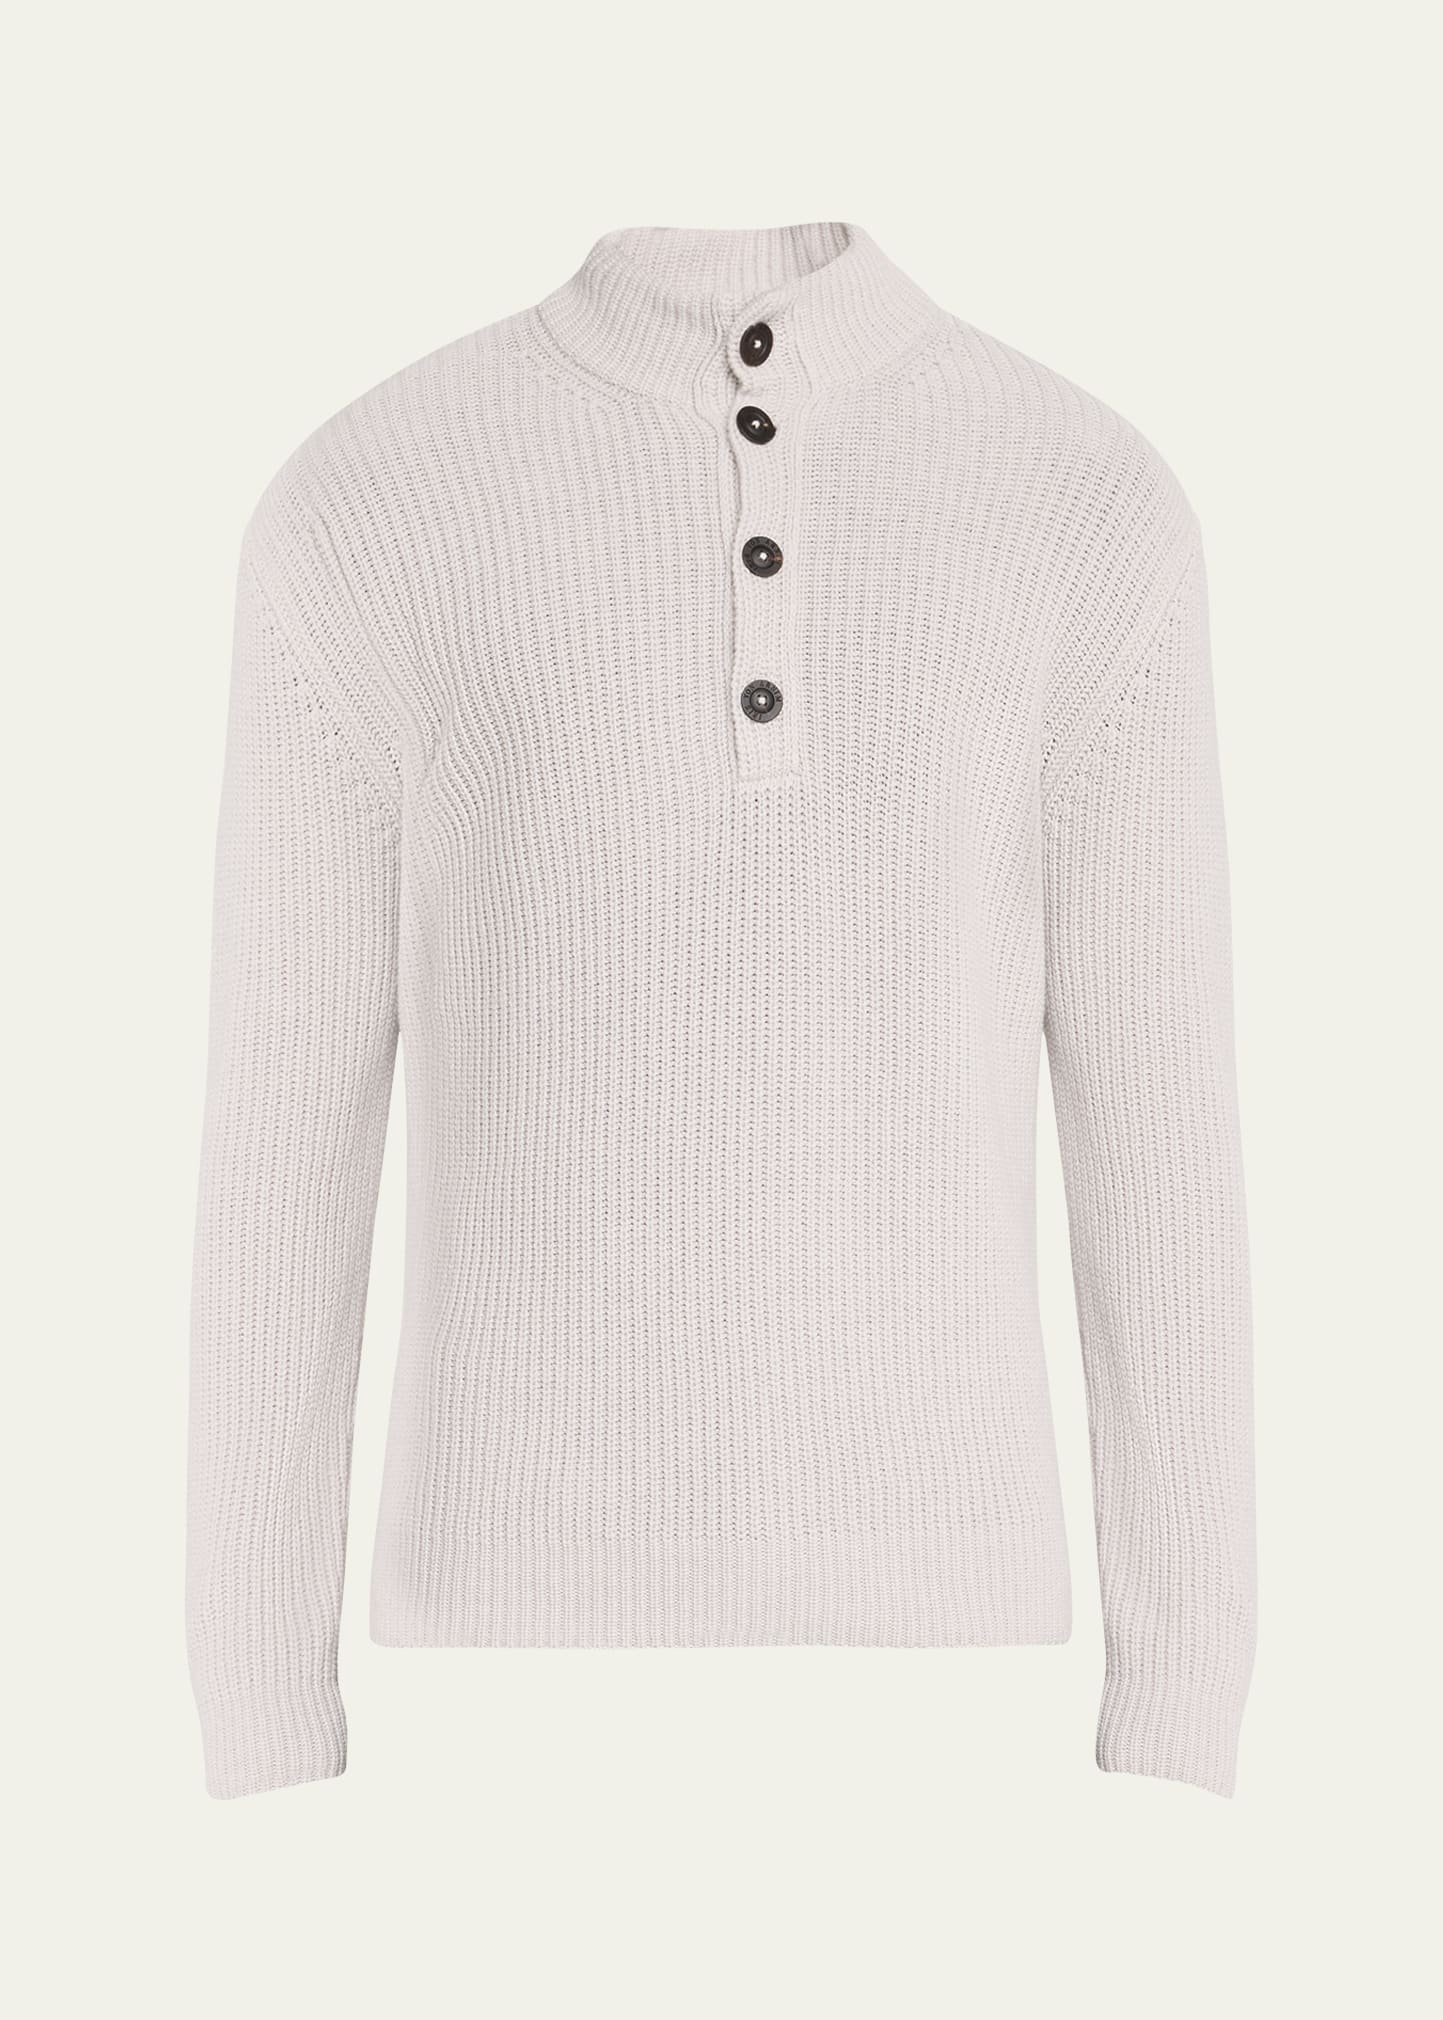 Shop Iris Von Arnim Men's Cashmere Four-button Pullover Sweater In Kitt